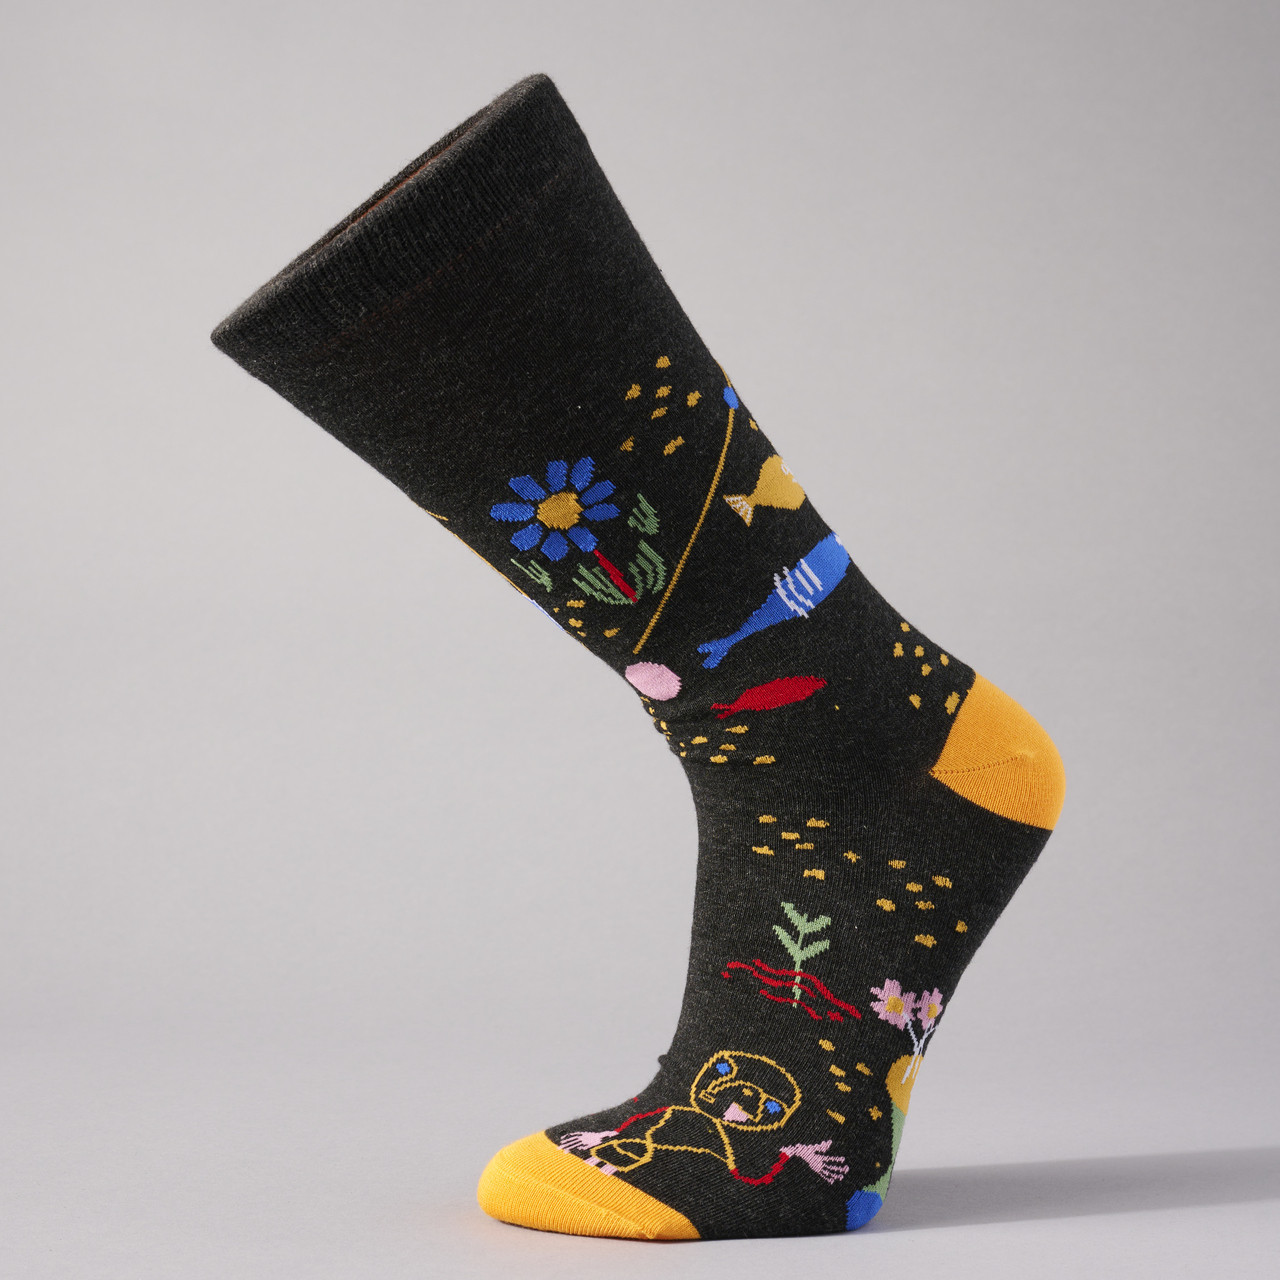 Paul Klee Socks - Image 3 of 3